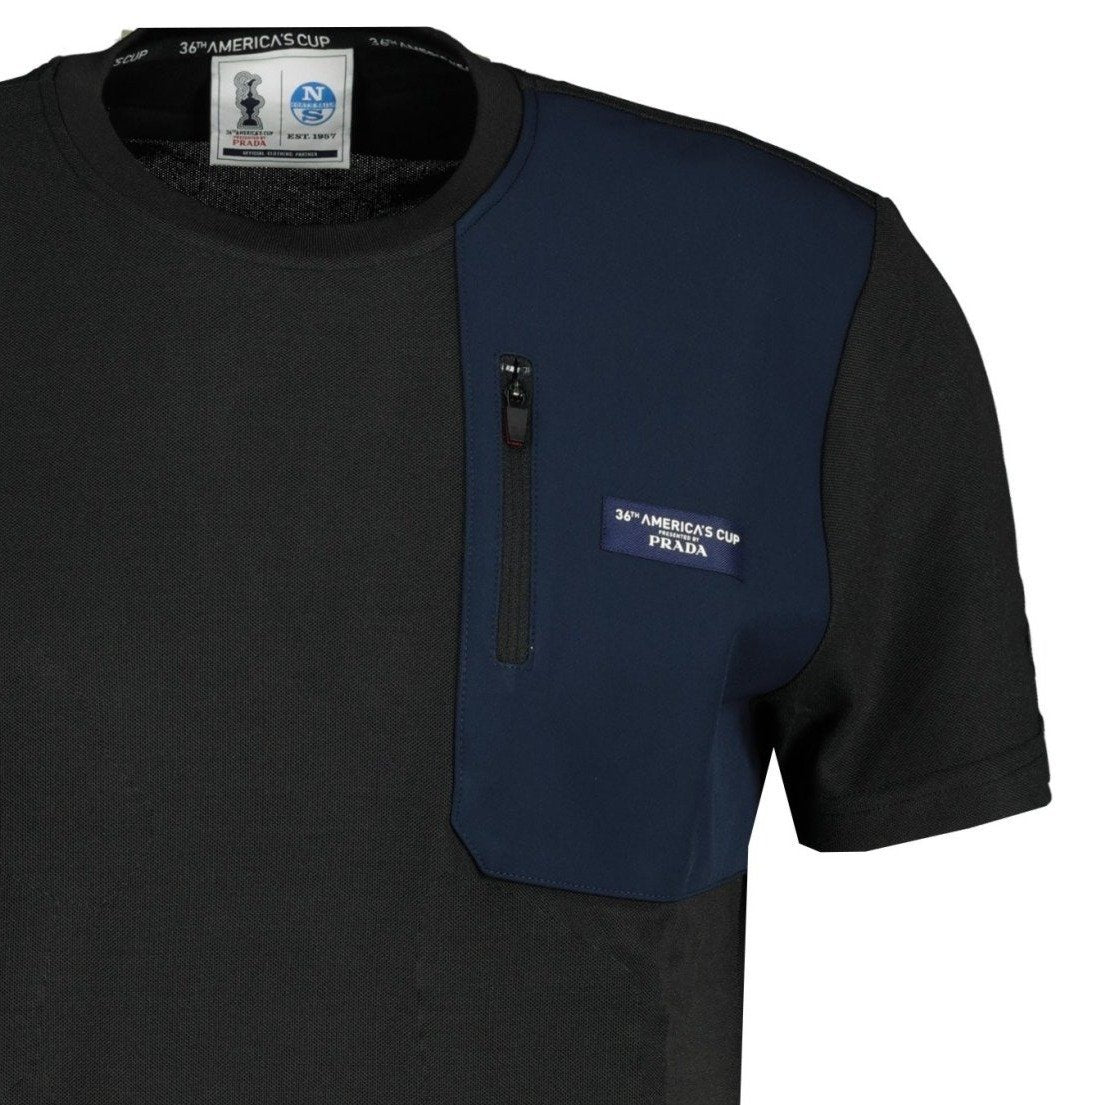 Prada x North Sails Zip Pocket T-Shirt Black & Blue | chancefashionco